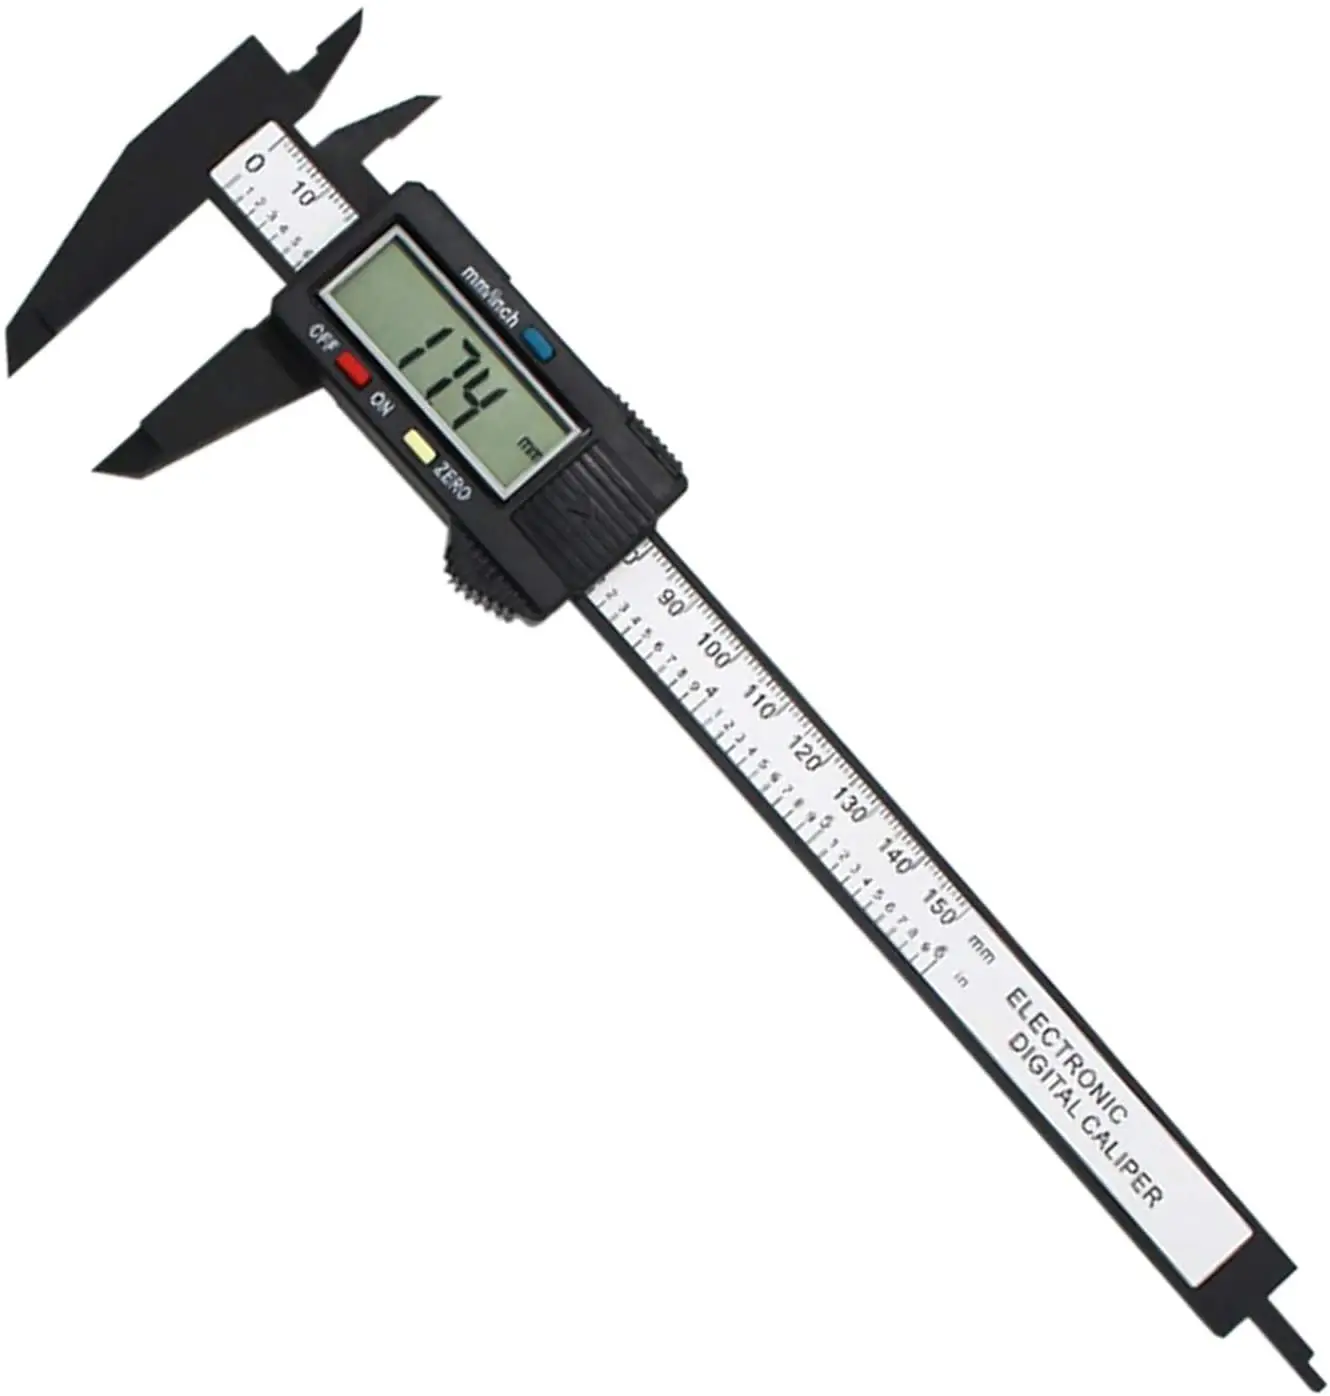 Instrumento de medición digital Vernier Caliper con pantalla digital e 